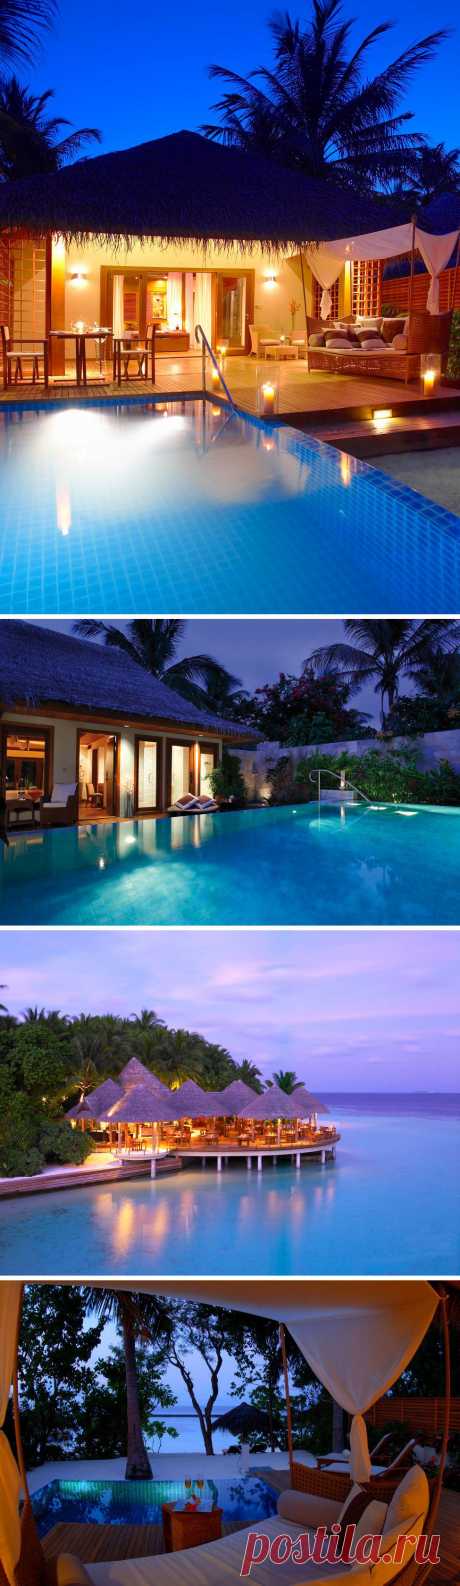 Baros – изысканный отель на Мальдивах, привлекающий безупречной элегантностью. Комфортабельные номера, кухня высочайшего качества, спа-салон мирового уровня, а главное – девственная тропическая природа.